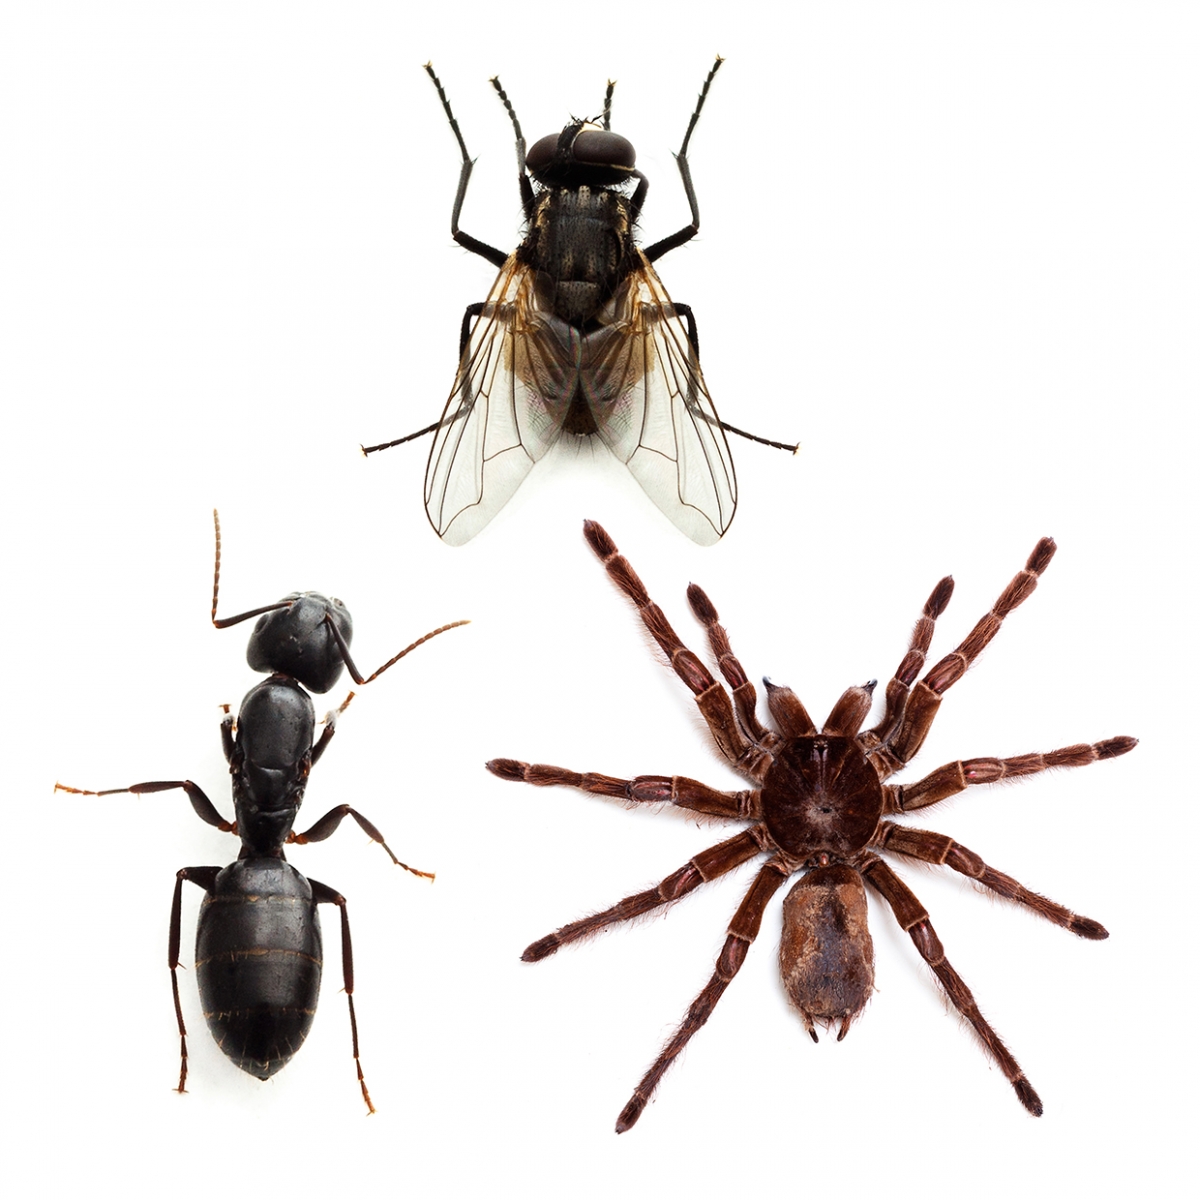 Imagen en la que se ven tres insectos: una hormiga, una araña y una mosca